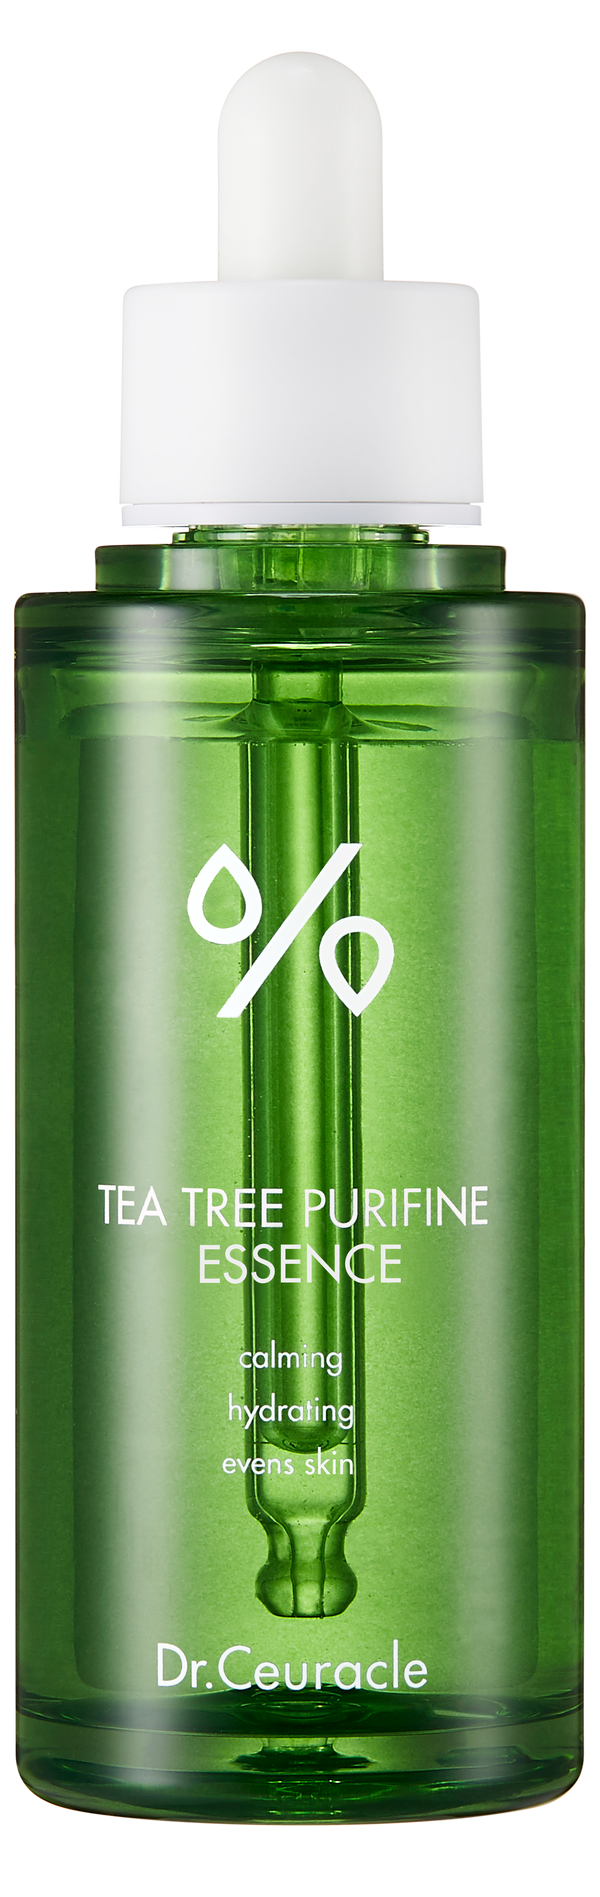 Tea Tree Purifine Essence